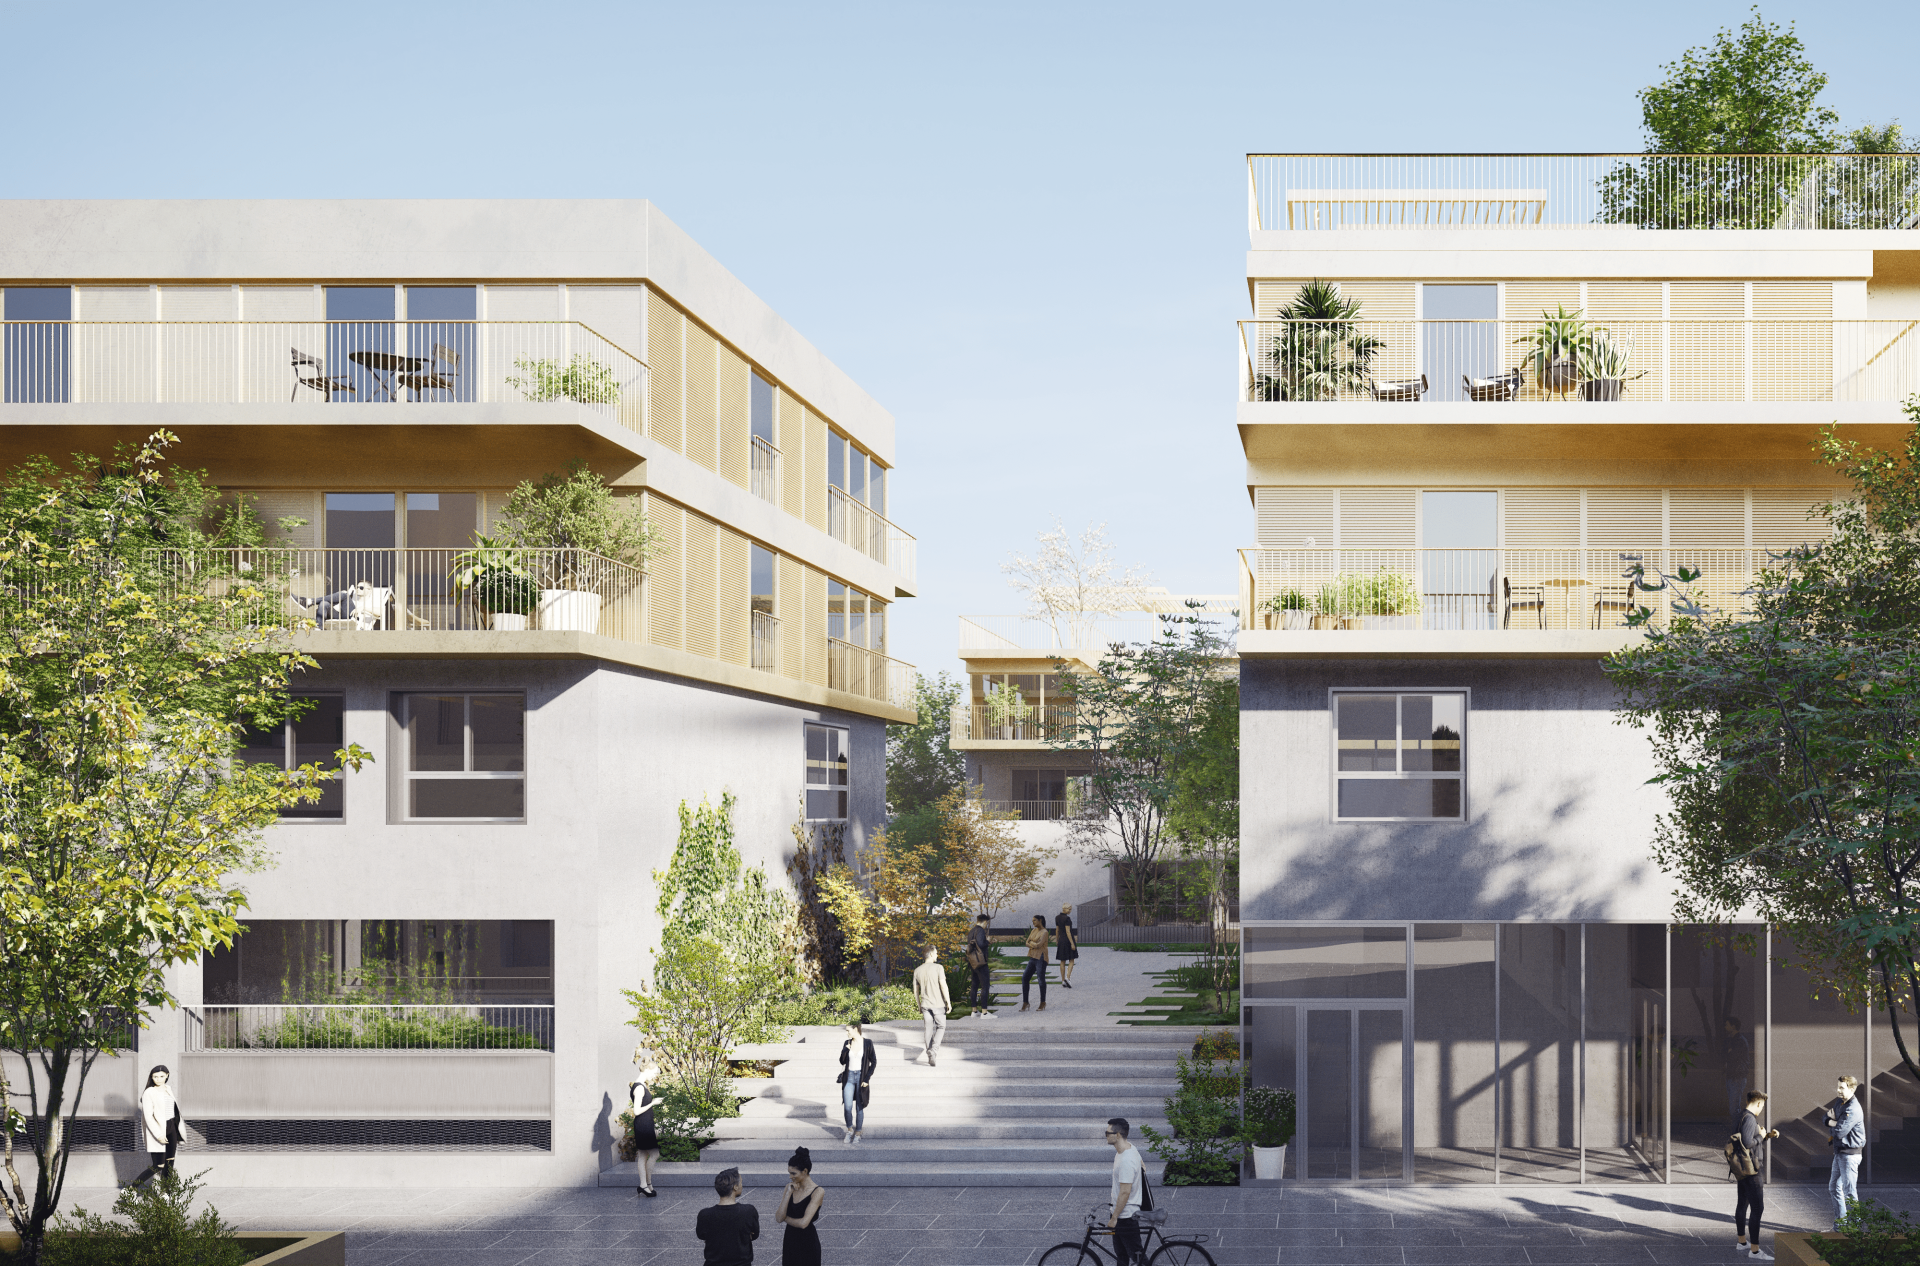 acheter logement neuf avec terrasse Dijon